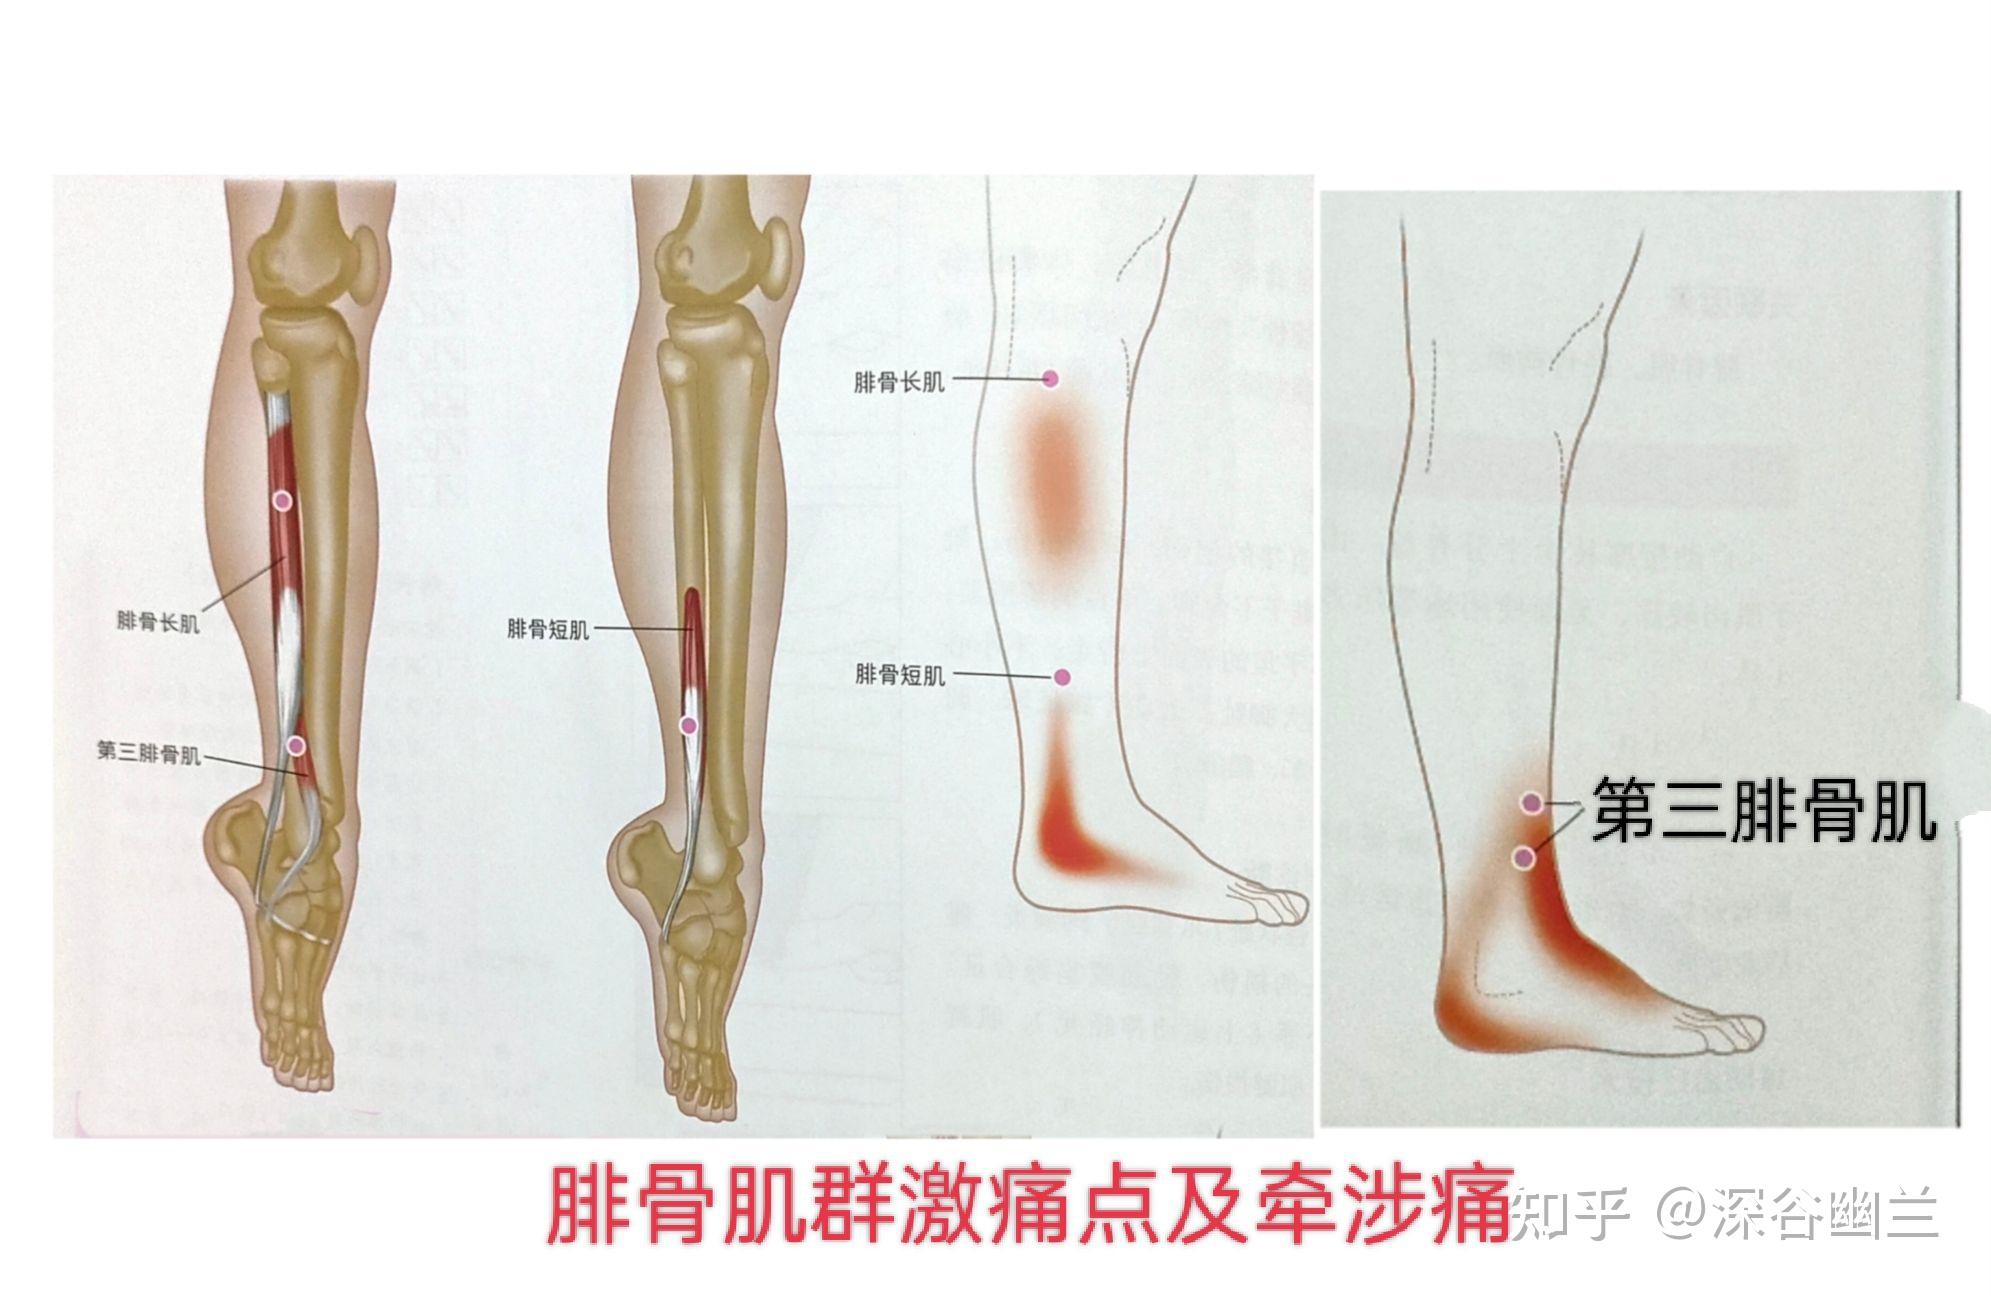 踝关节疼痛有关的激痛点及穴位